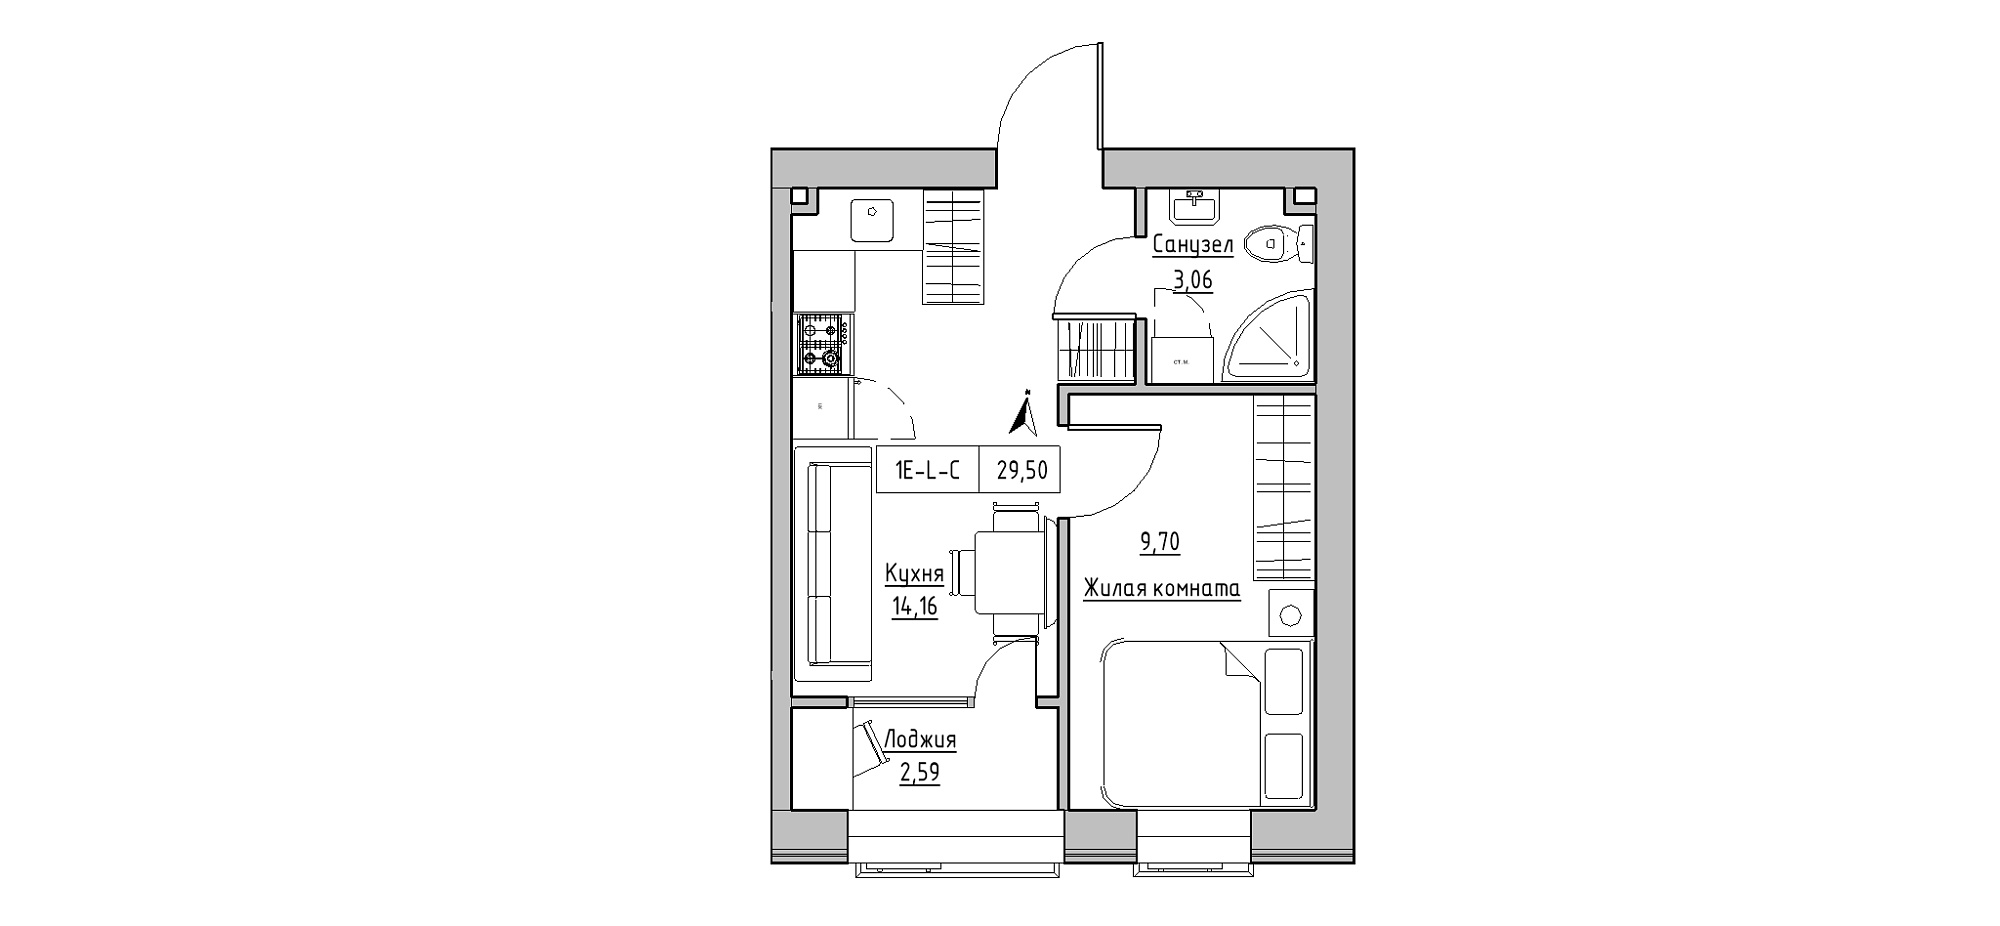 Планування 1-к квартира площею 29.5м2, KS-020-01/0006.